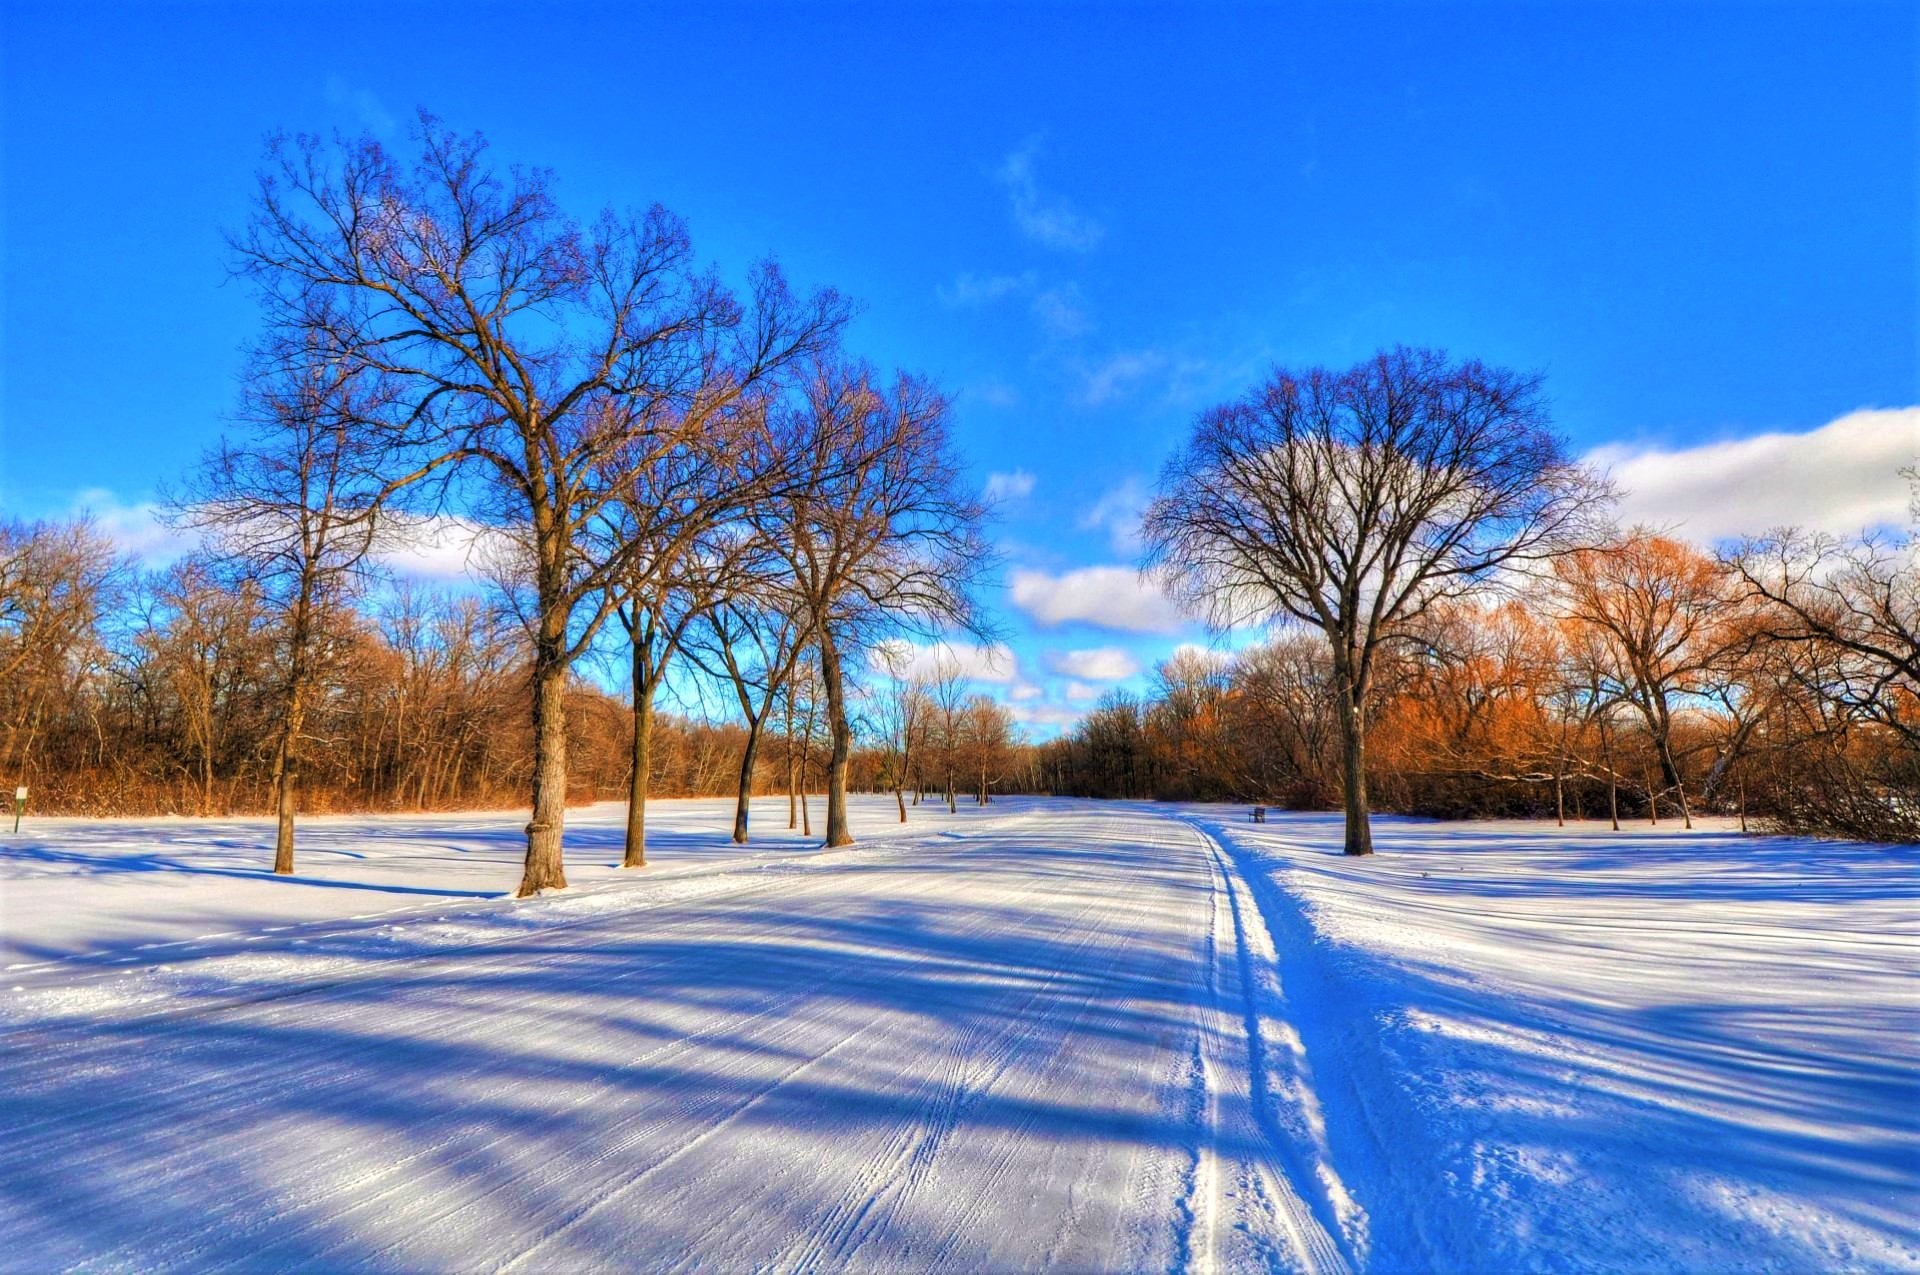 Скачать картинку Зима, Снег, Дерево, Фотографии в телефон бесплатно.